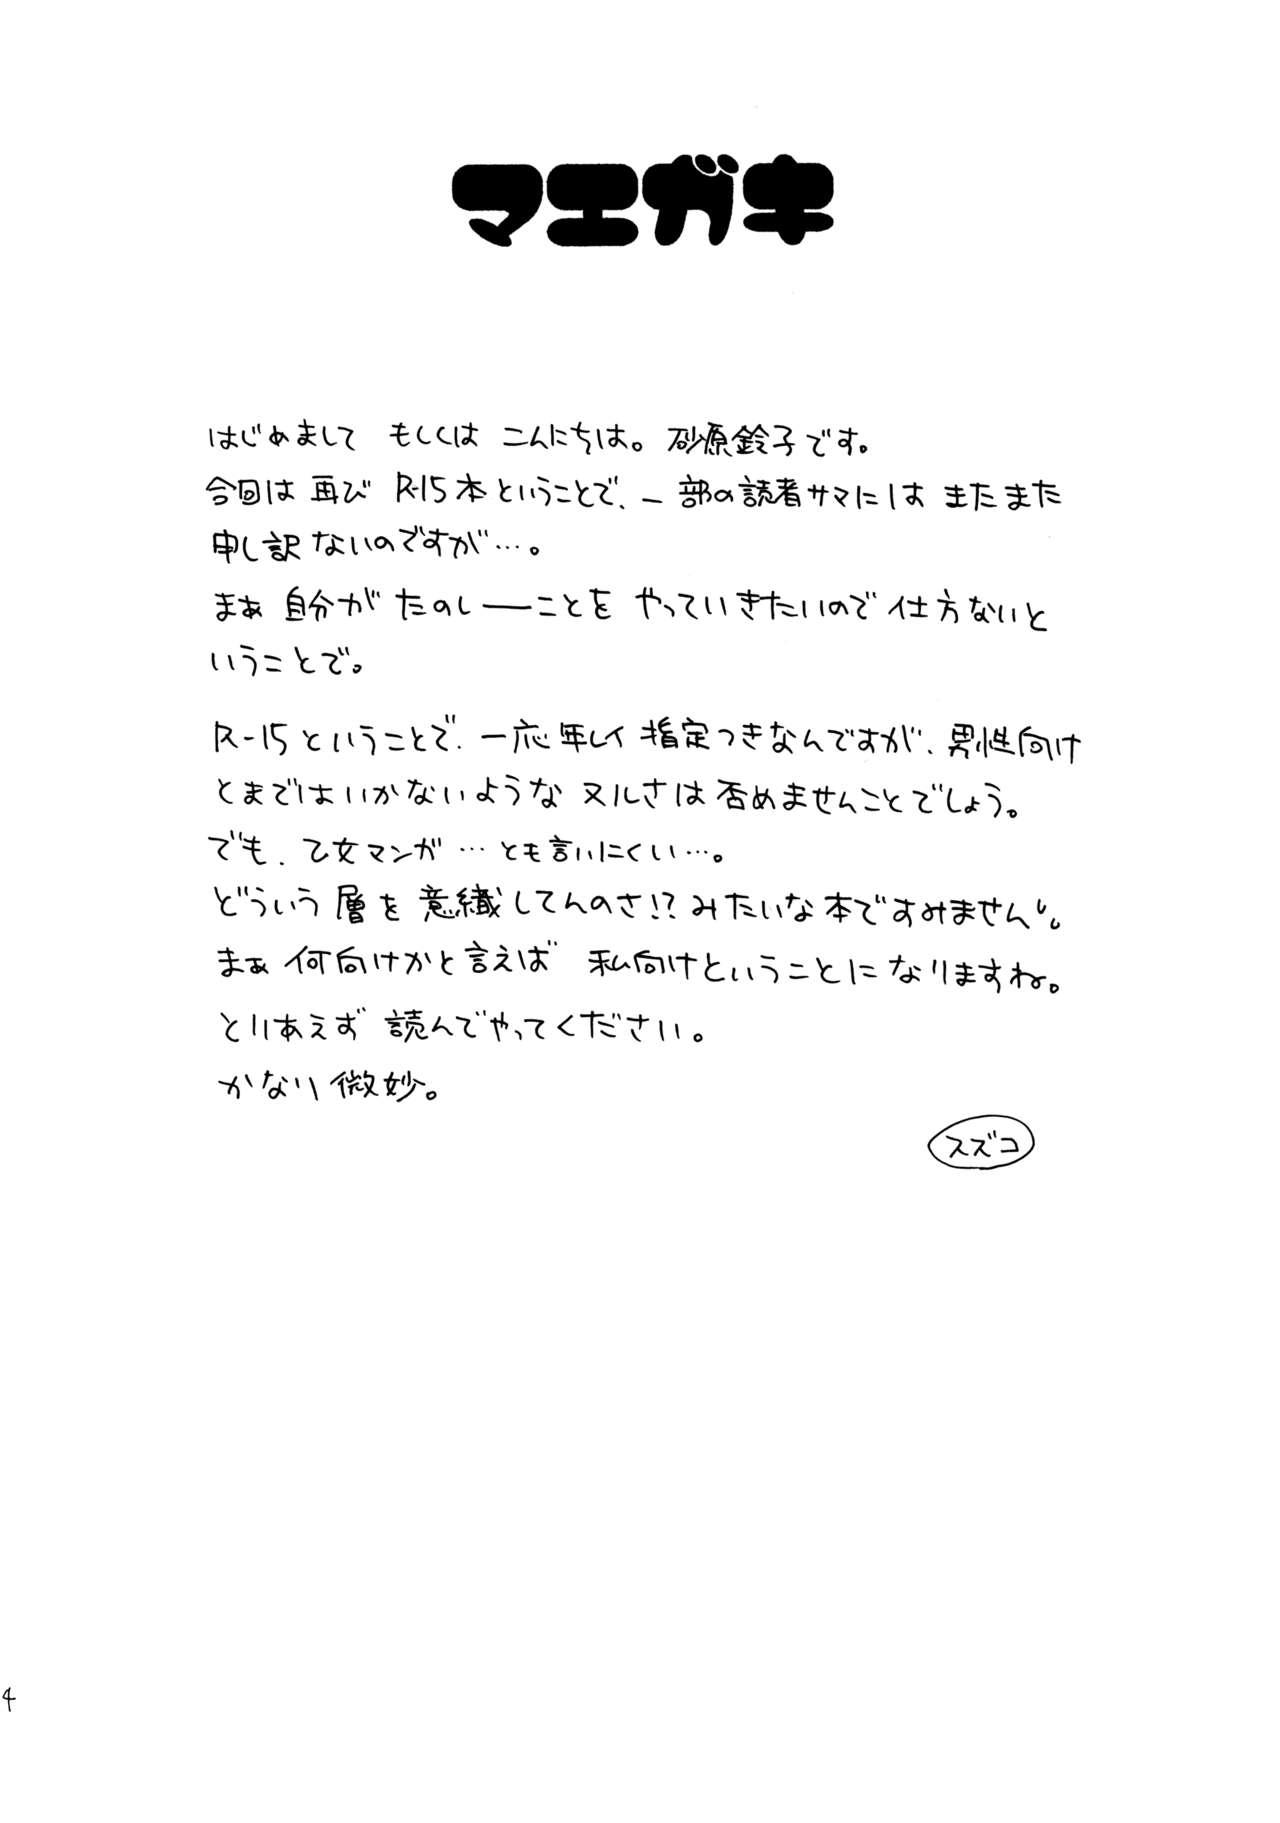 Officesex Hitorijime - Cardcaptor sakura Stepdad - Page 4